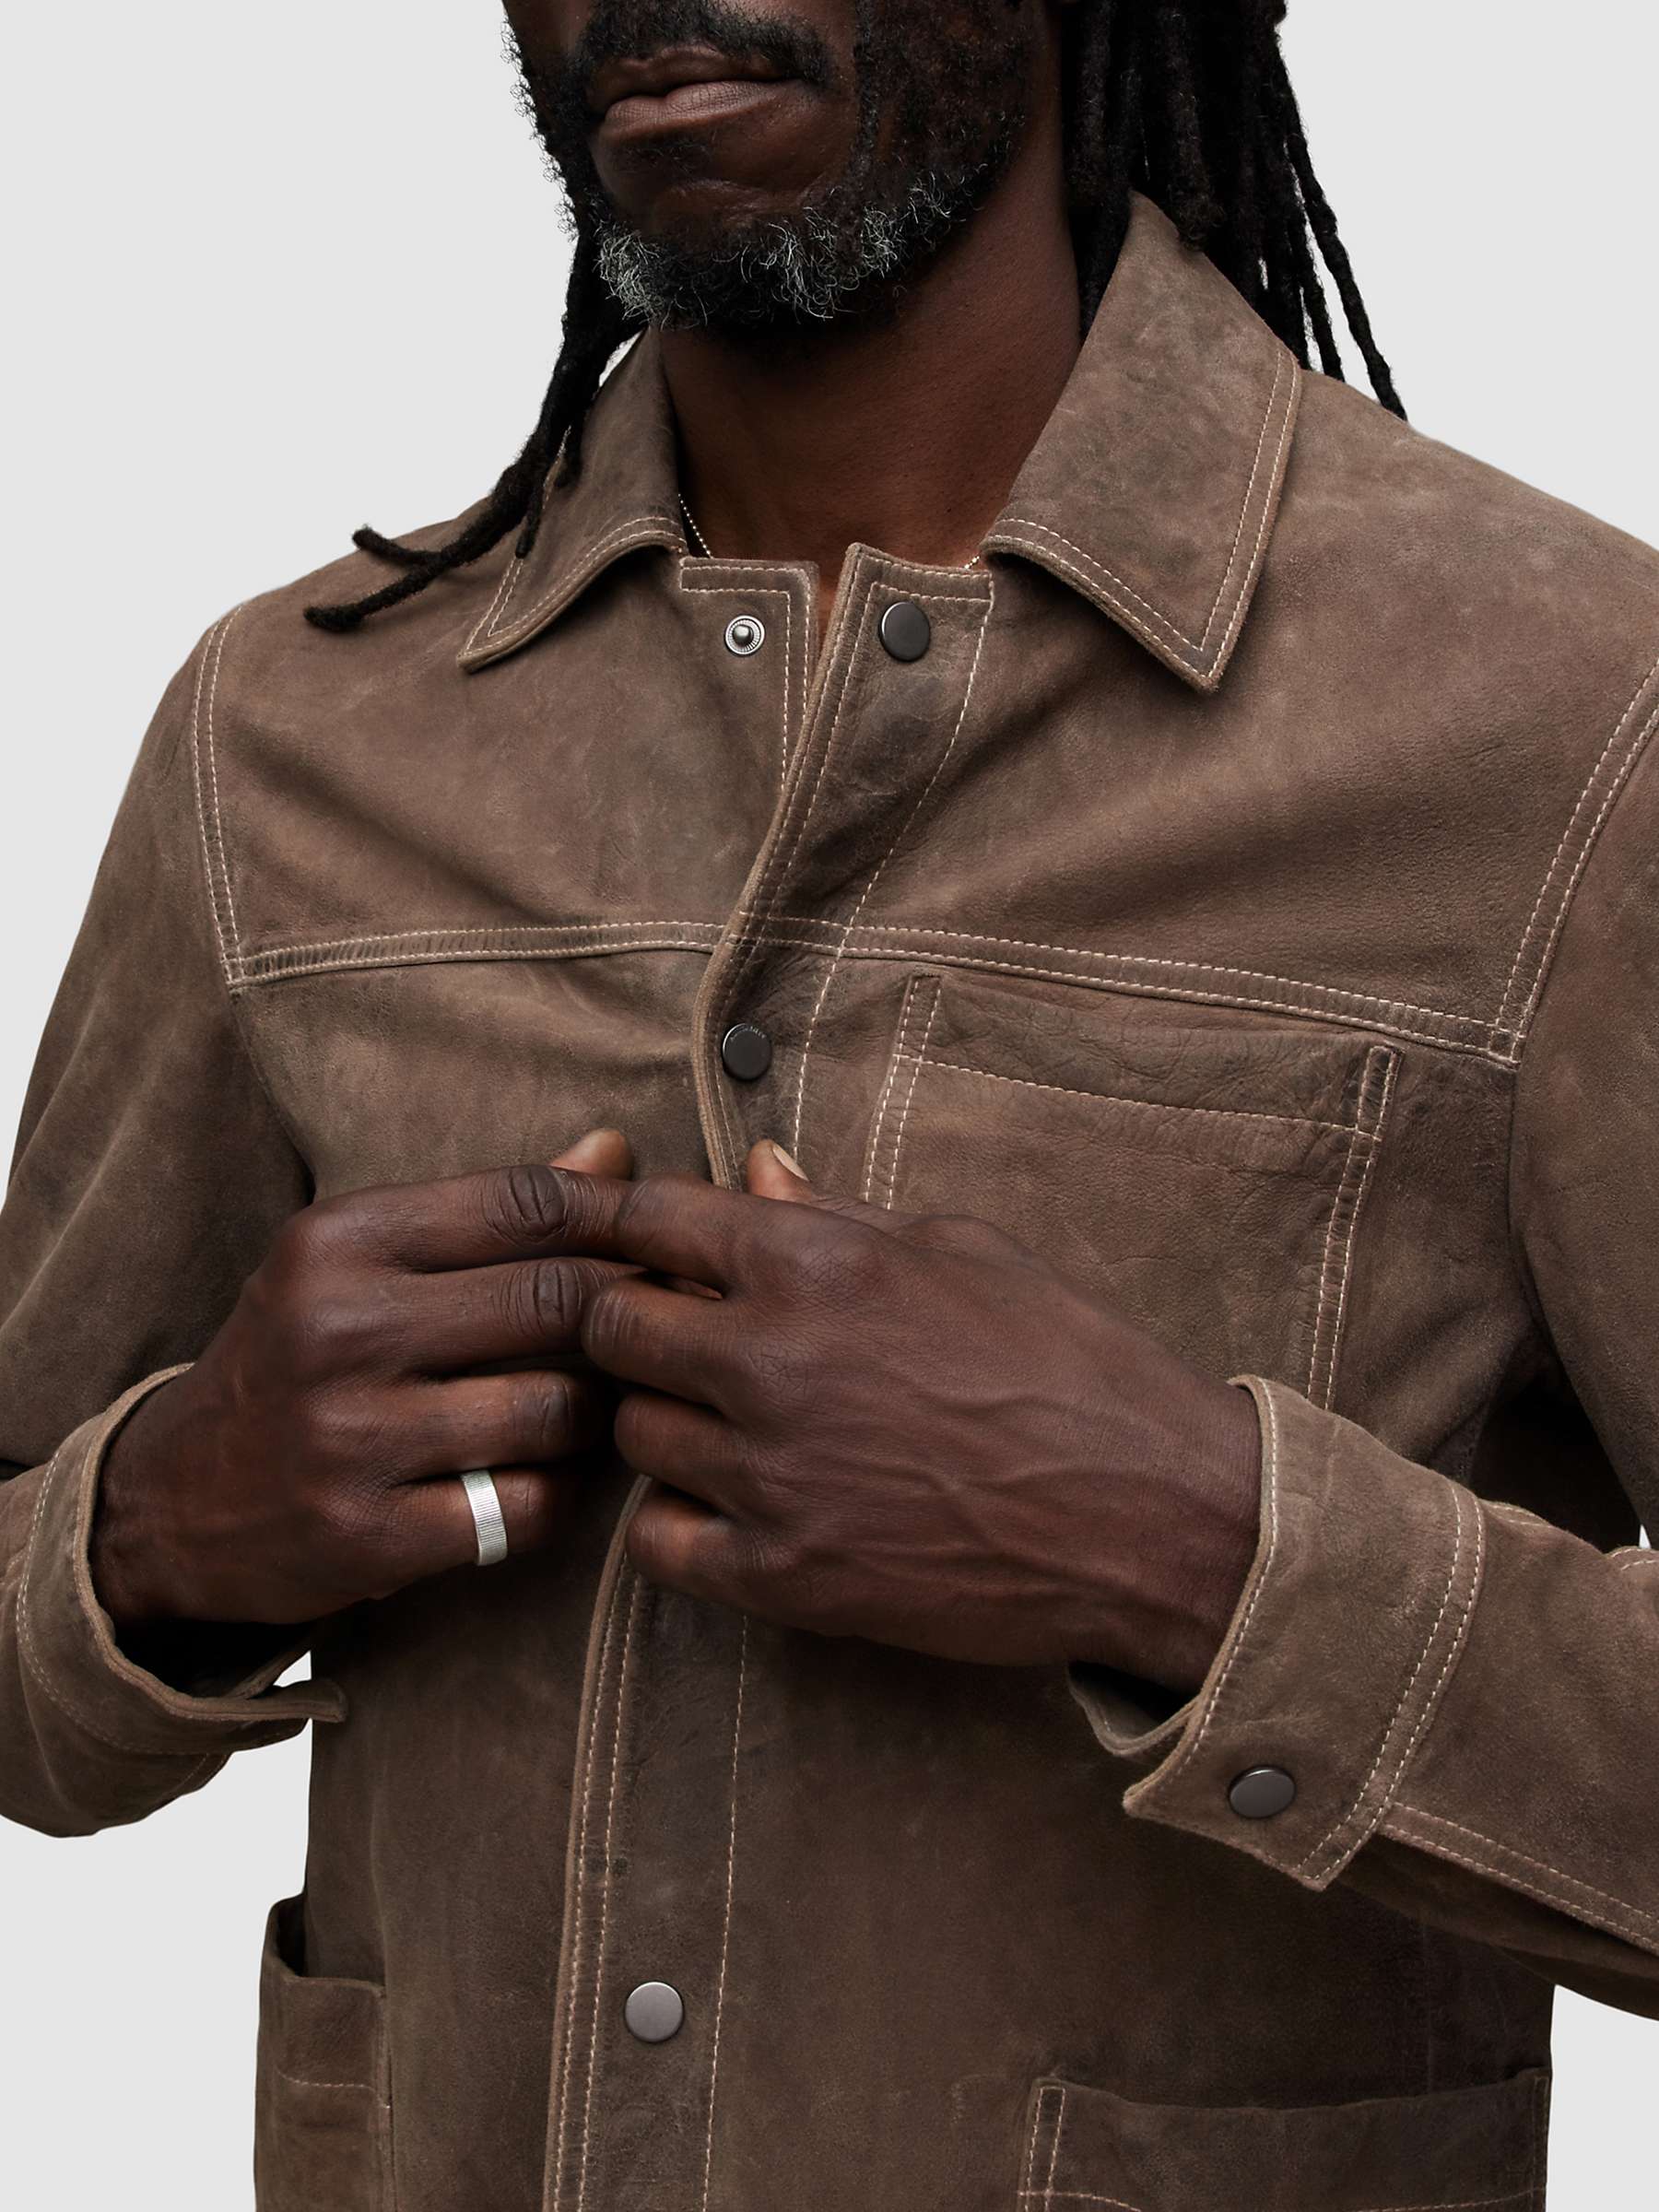 Buy AllSaints Long Sleeve Suede Link Jacket, Light Taupe Online at johnlewis.com